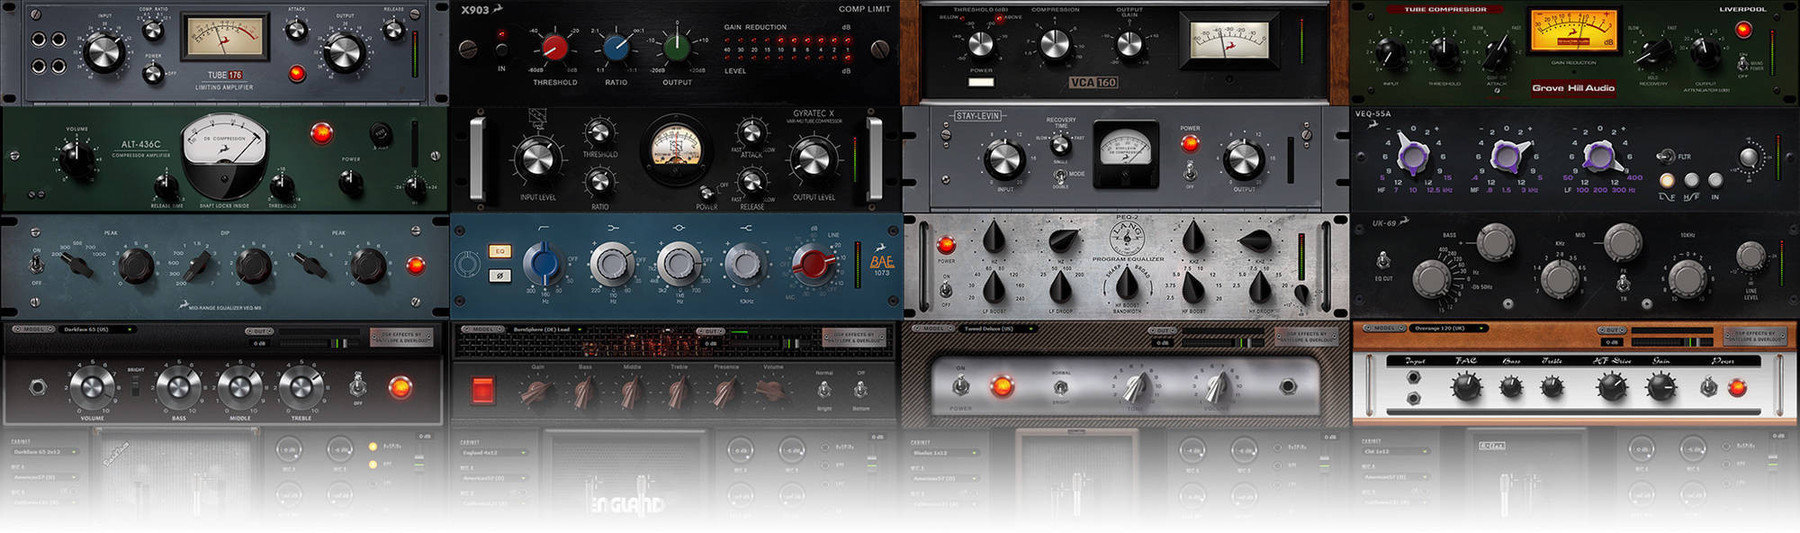 Studio-Effekt-Plugin Antelope Audio Premium Upgrade Discrete 8